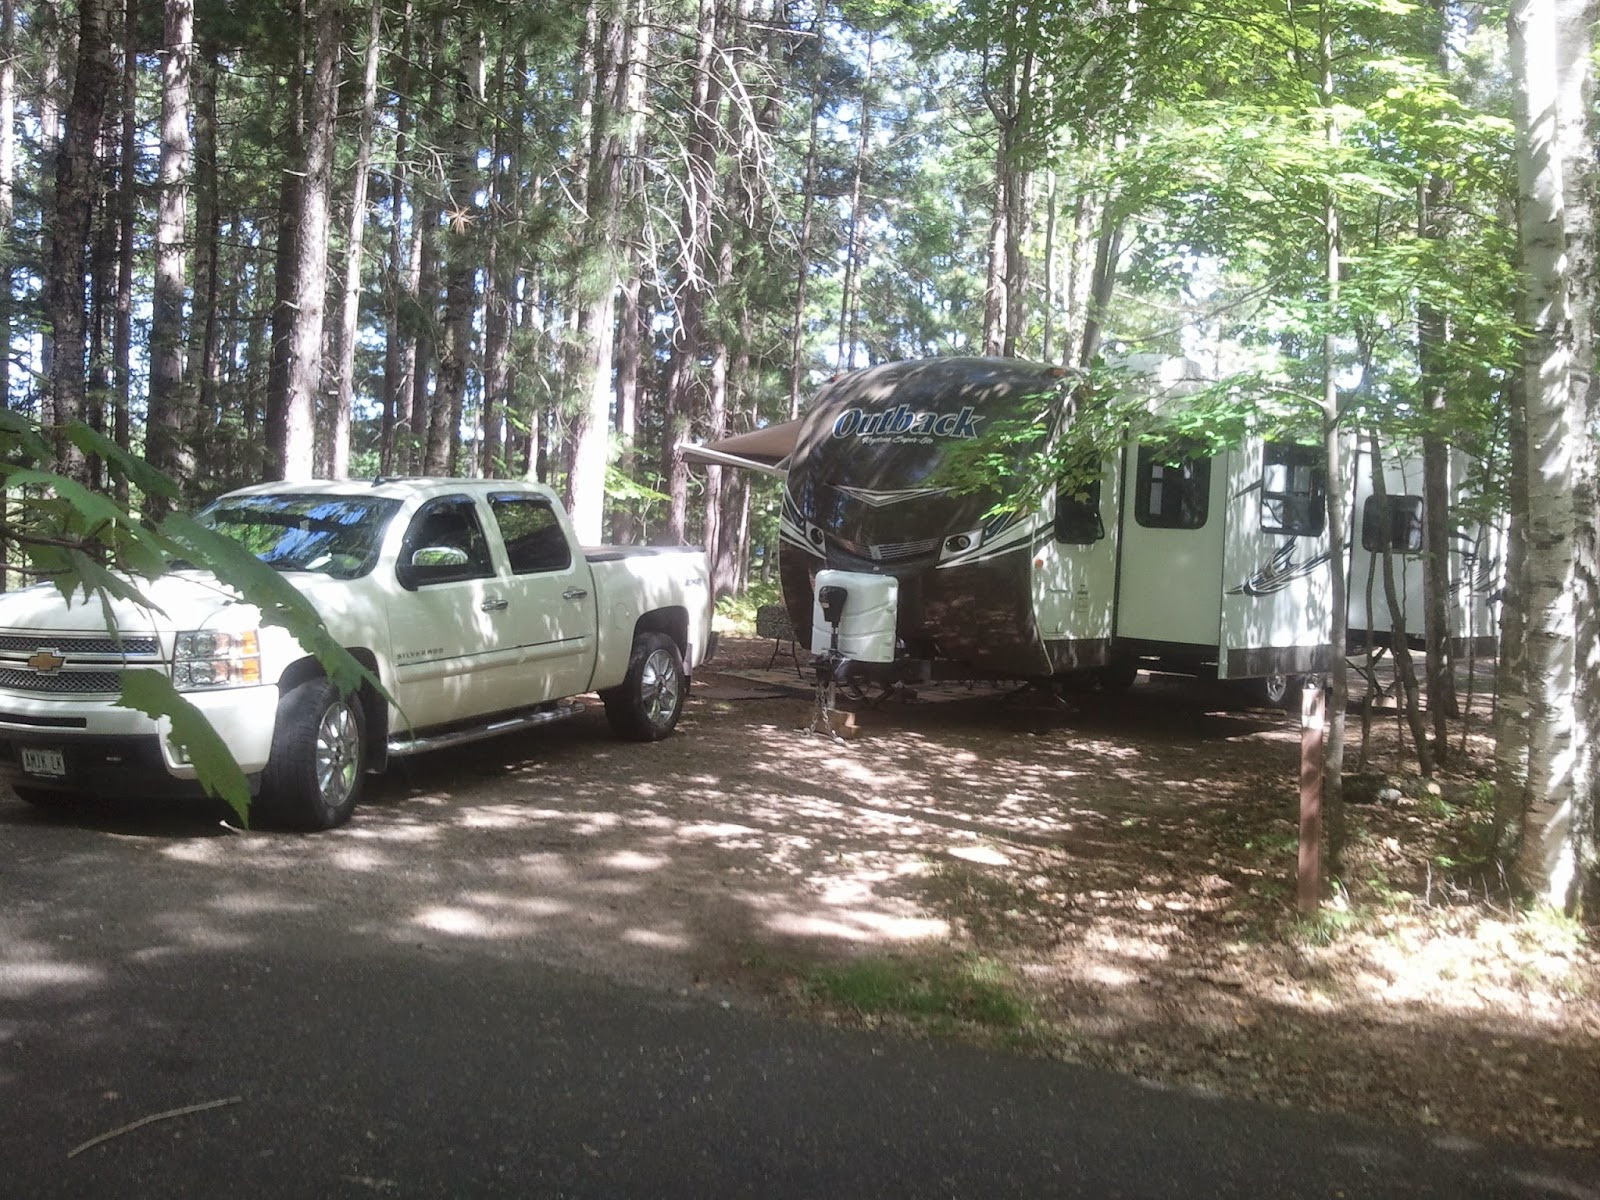 Amiklodge Camping at Laurel Lake Campground, Three Lakes, Wisconsin